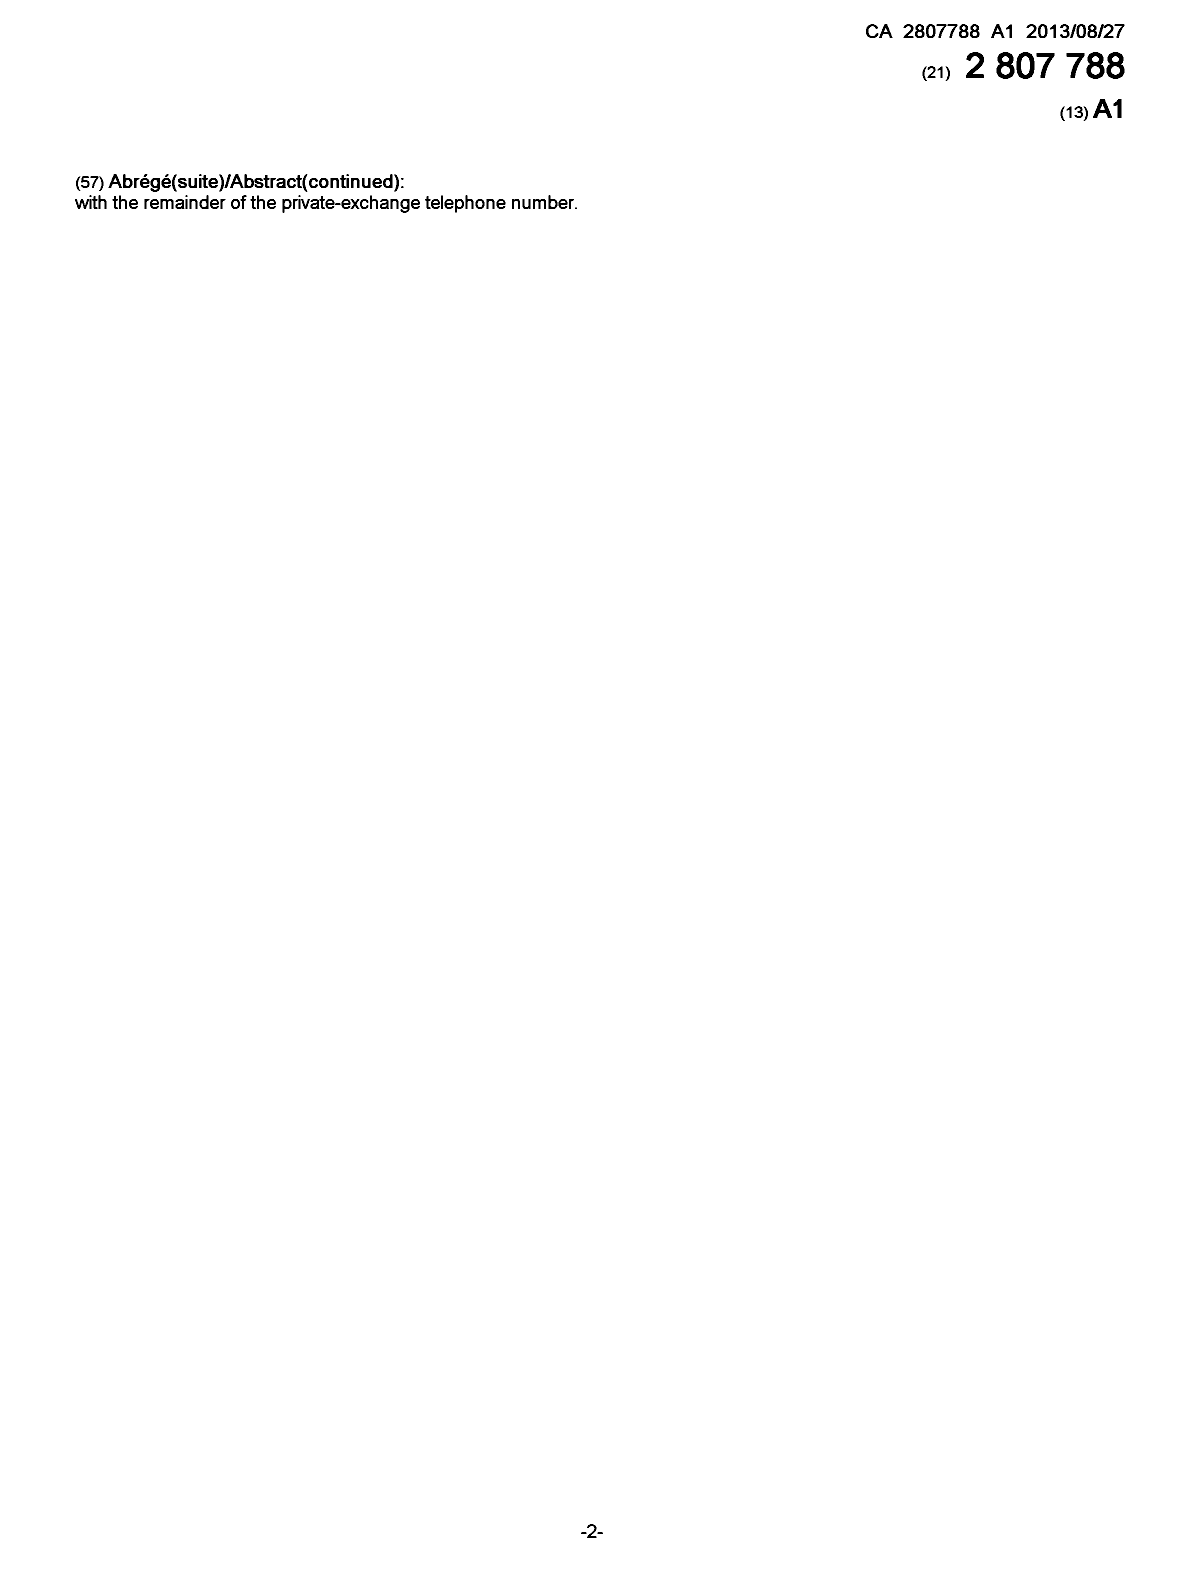 Document de brevet canadien 2807788. Page couverture 20121203. Image 2 de 2